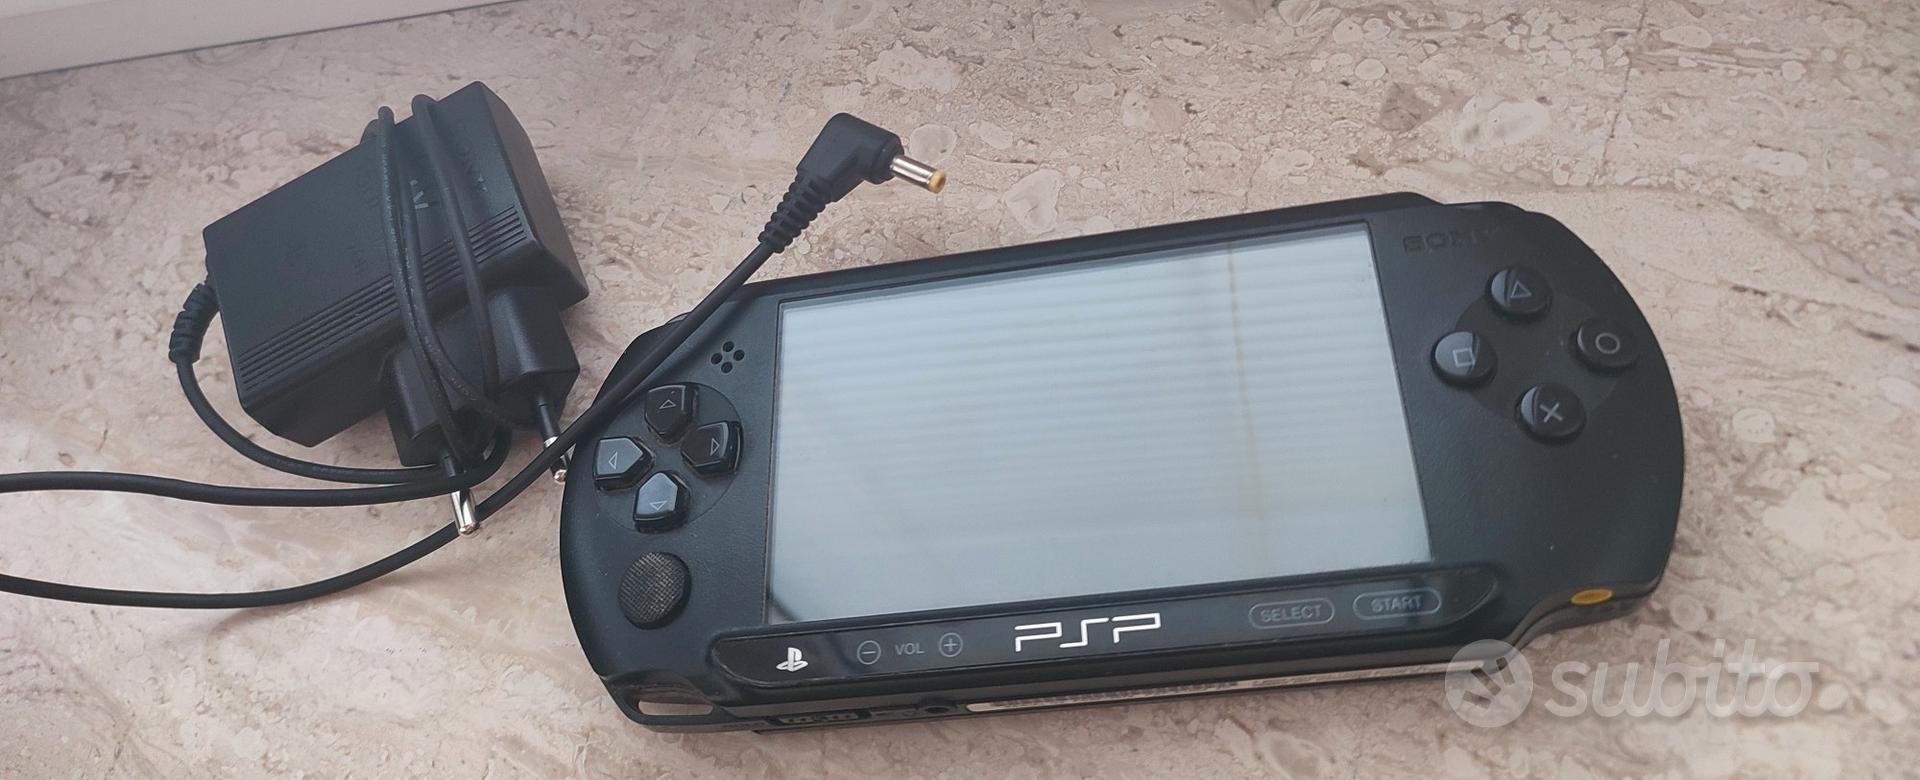 Sony PlayStation Psp portatile - Console e Videogiochi In vendita a Brindisi